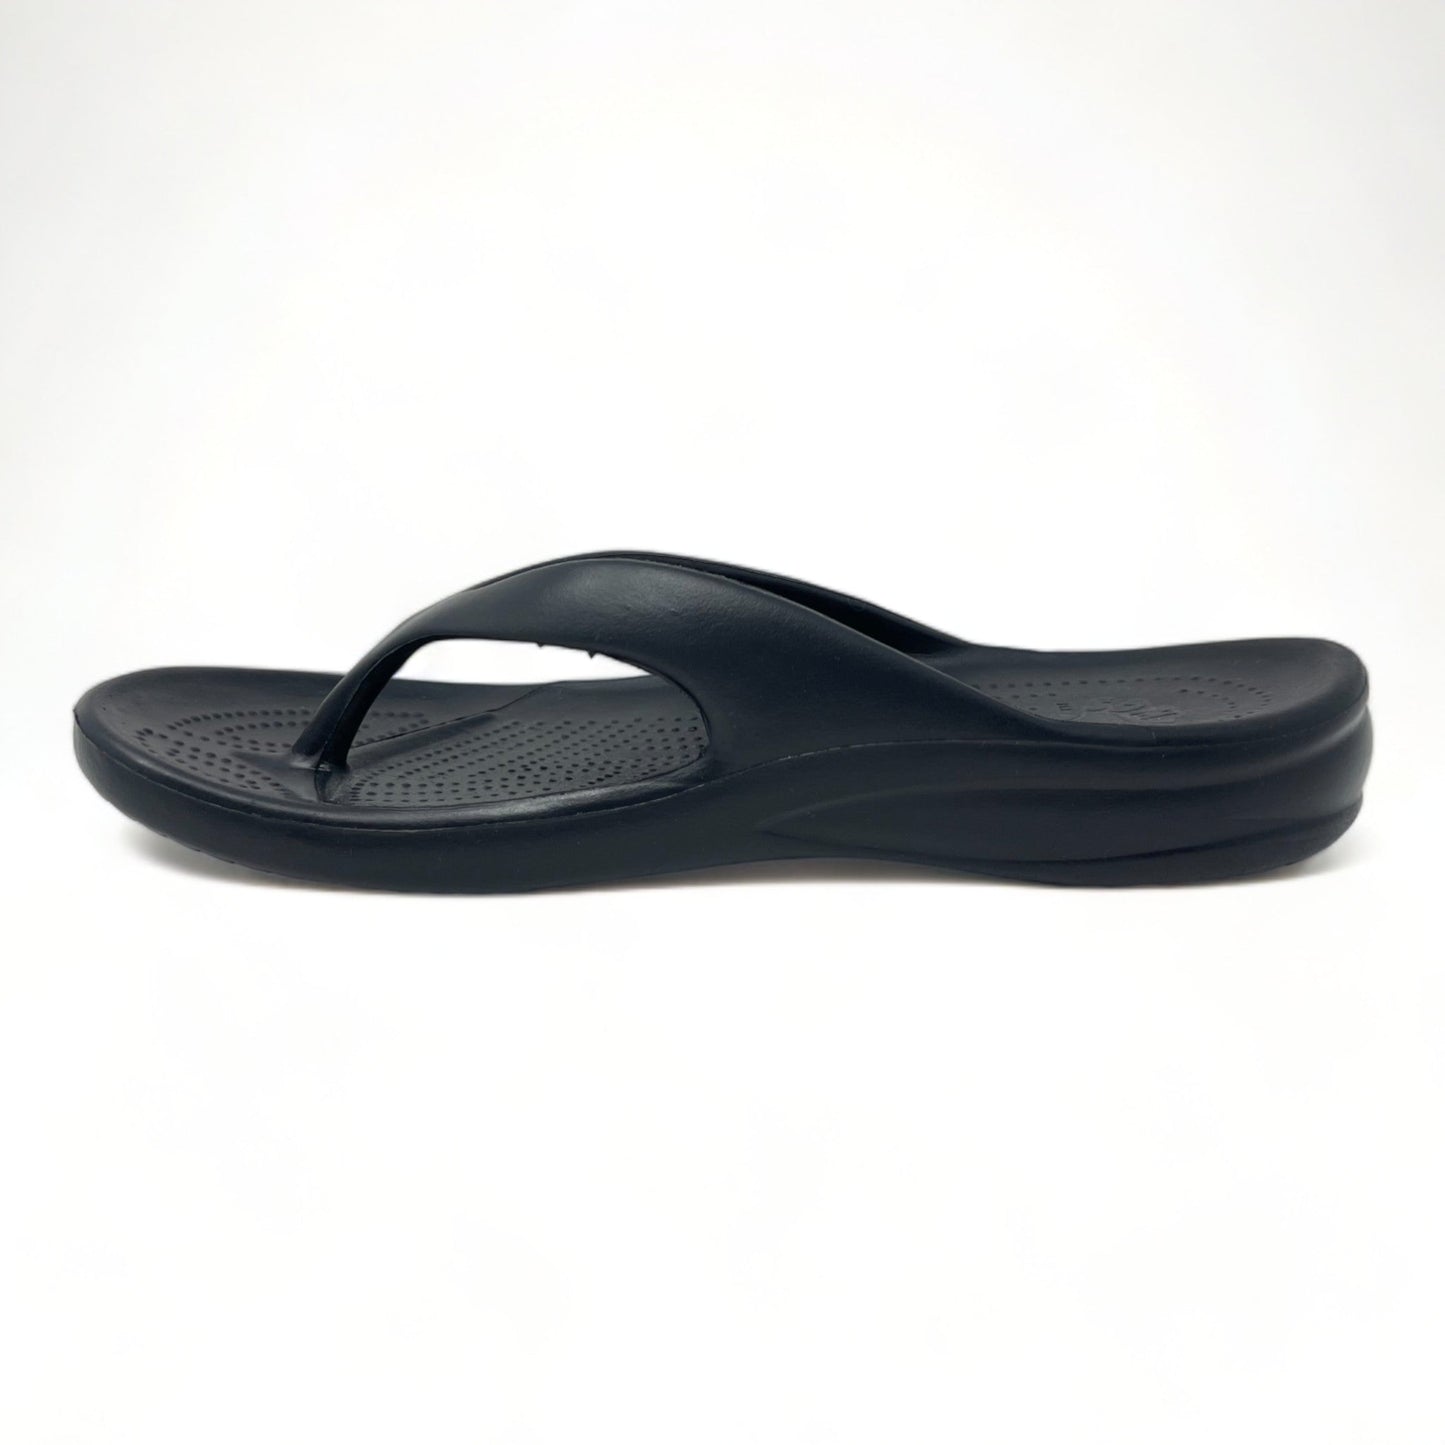 Women's Flip Flops - Black by DAWGS USA